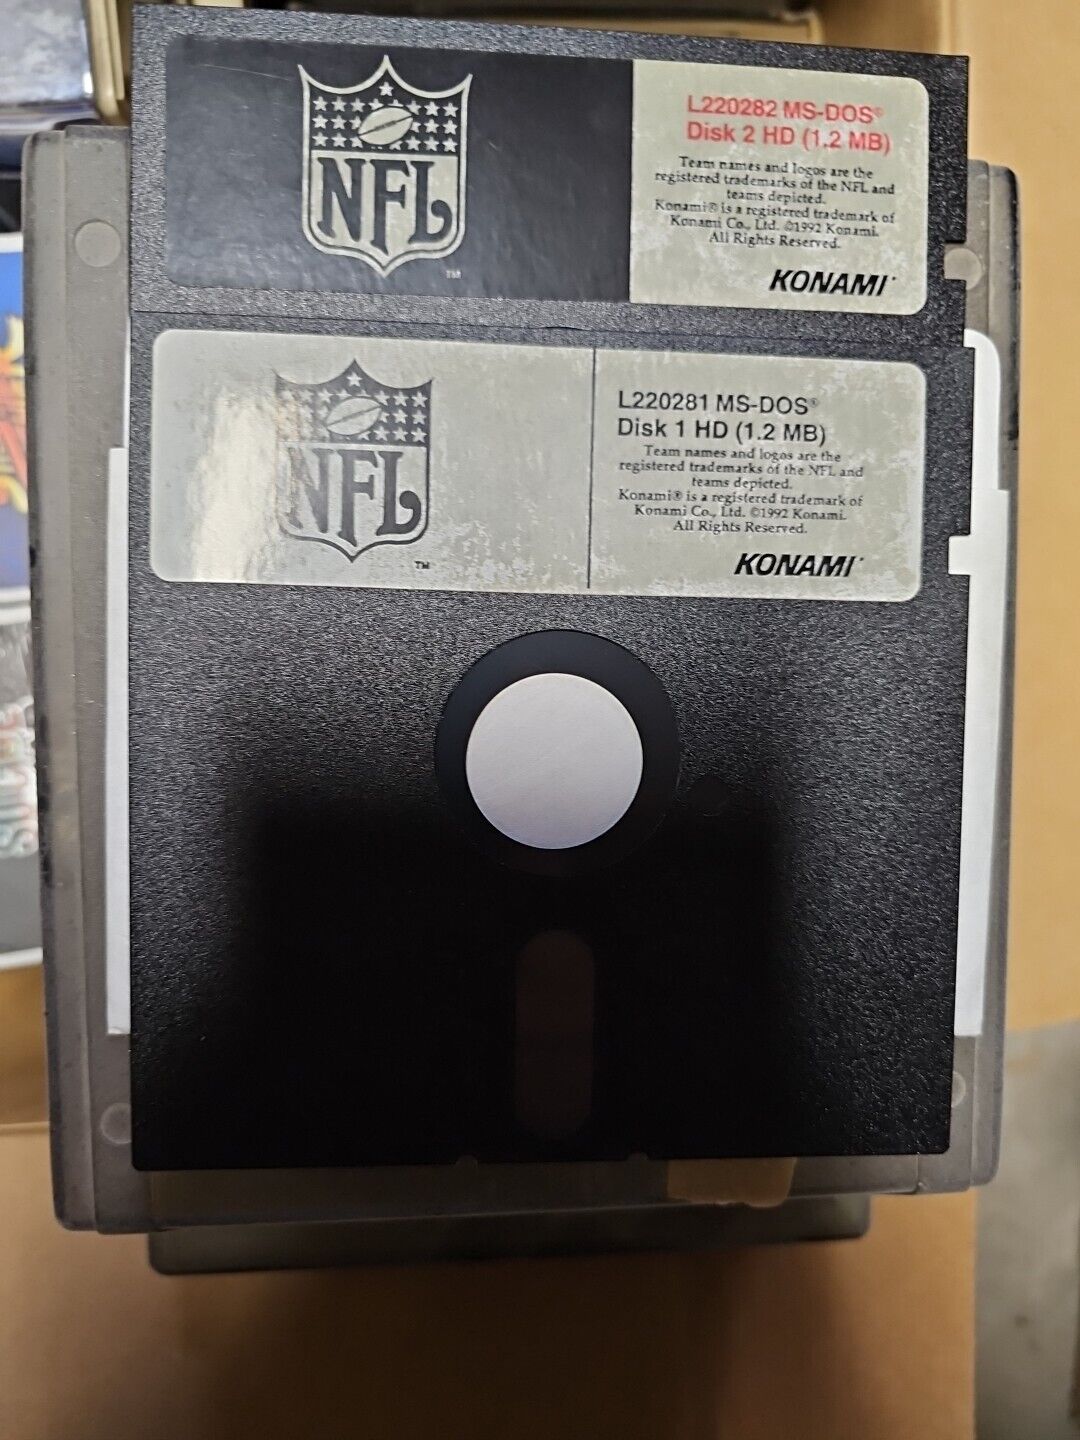 VTG NFL 5.25 Floppy Disk Games For MS-DOS 